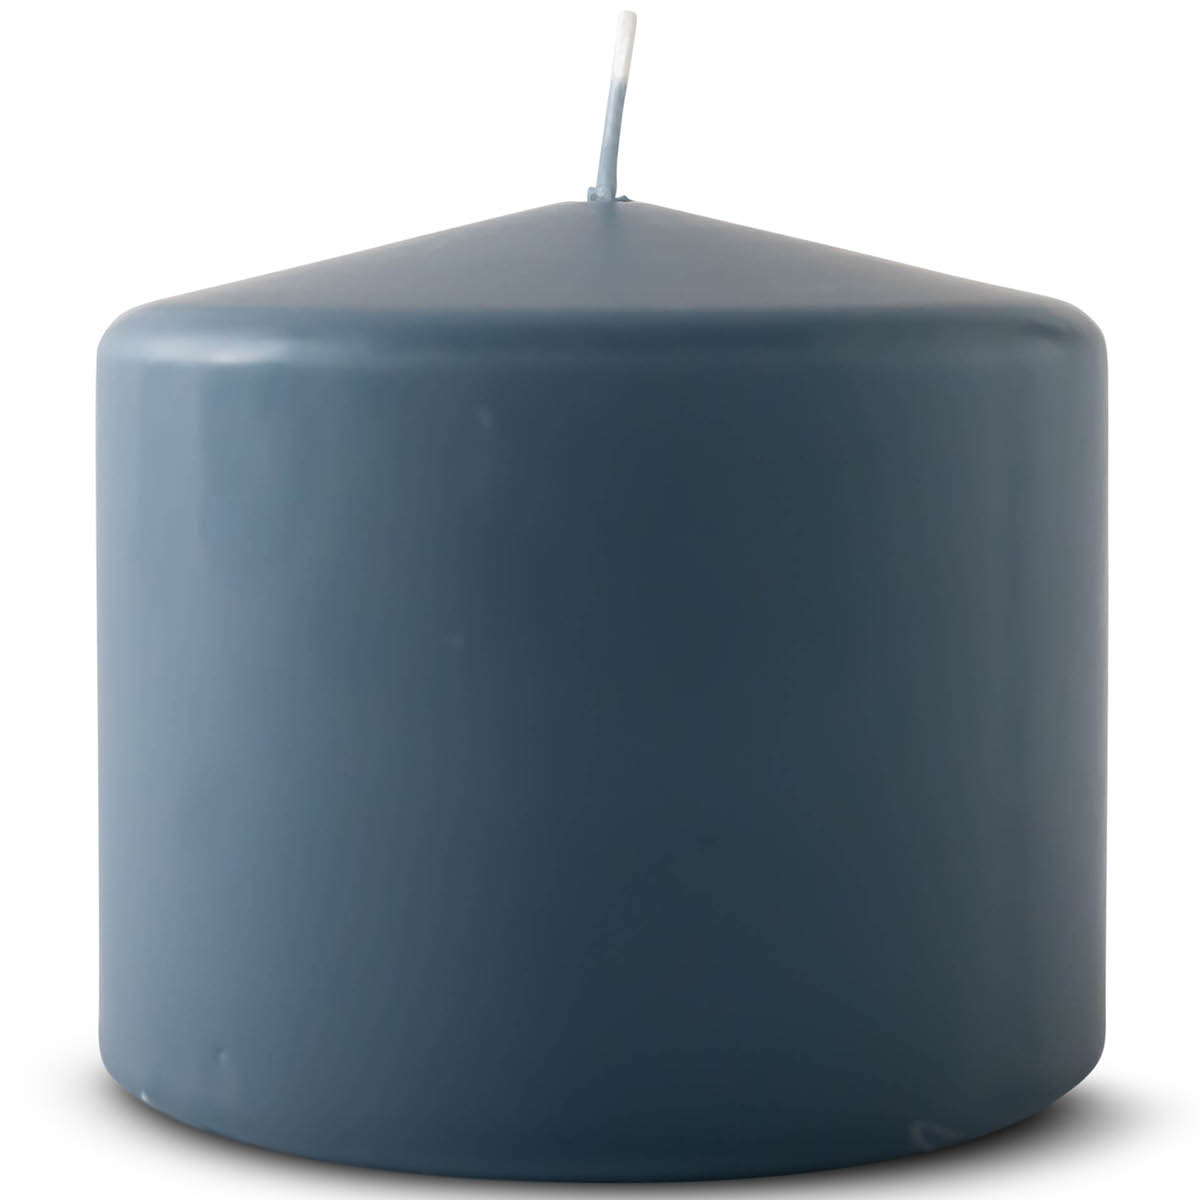 Magnor – Blockljus 10×9 cm Blå/Grå